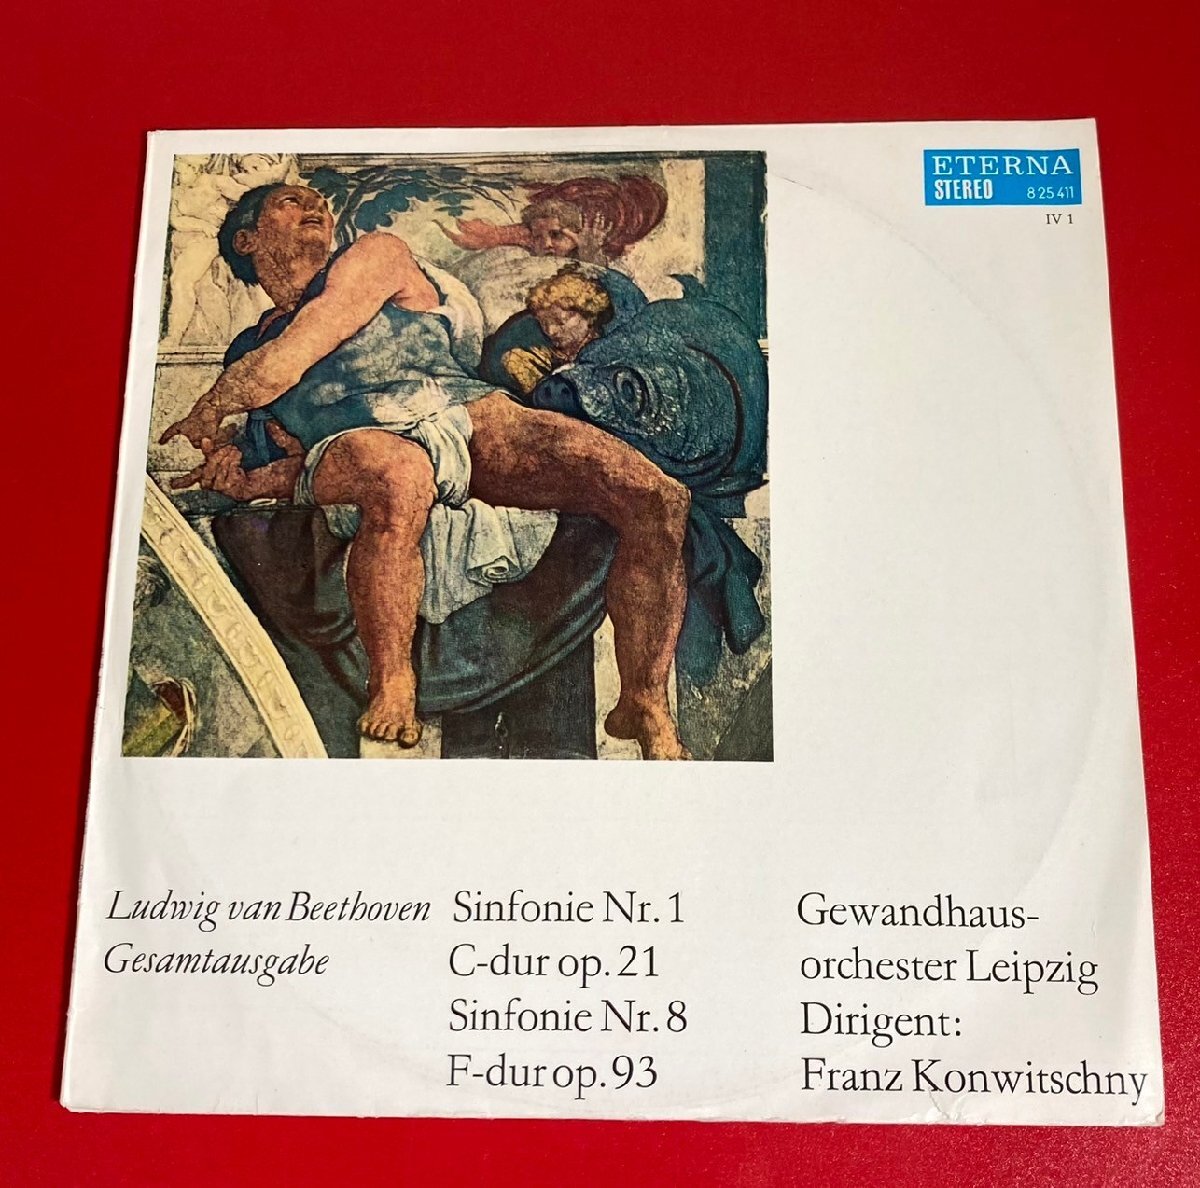 【レコードコレクター放出品】 LP コンヴィチュニー ベートーヴェン 交響曲 第1番 第8番 ETERNAの画像1